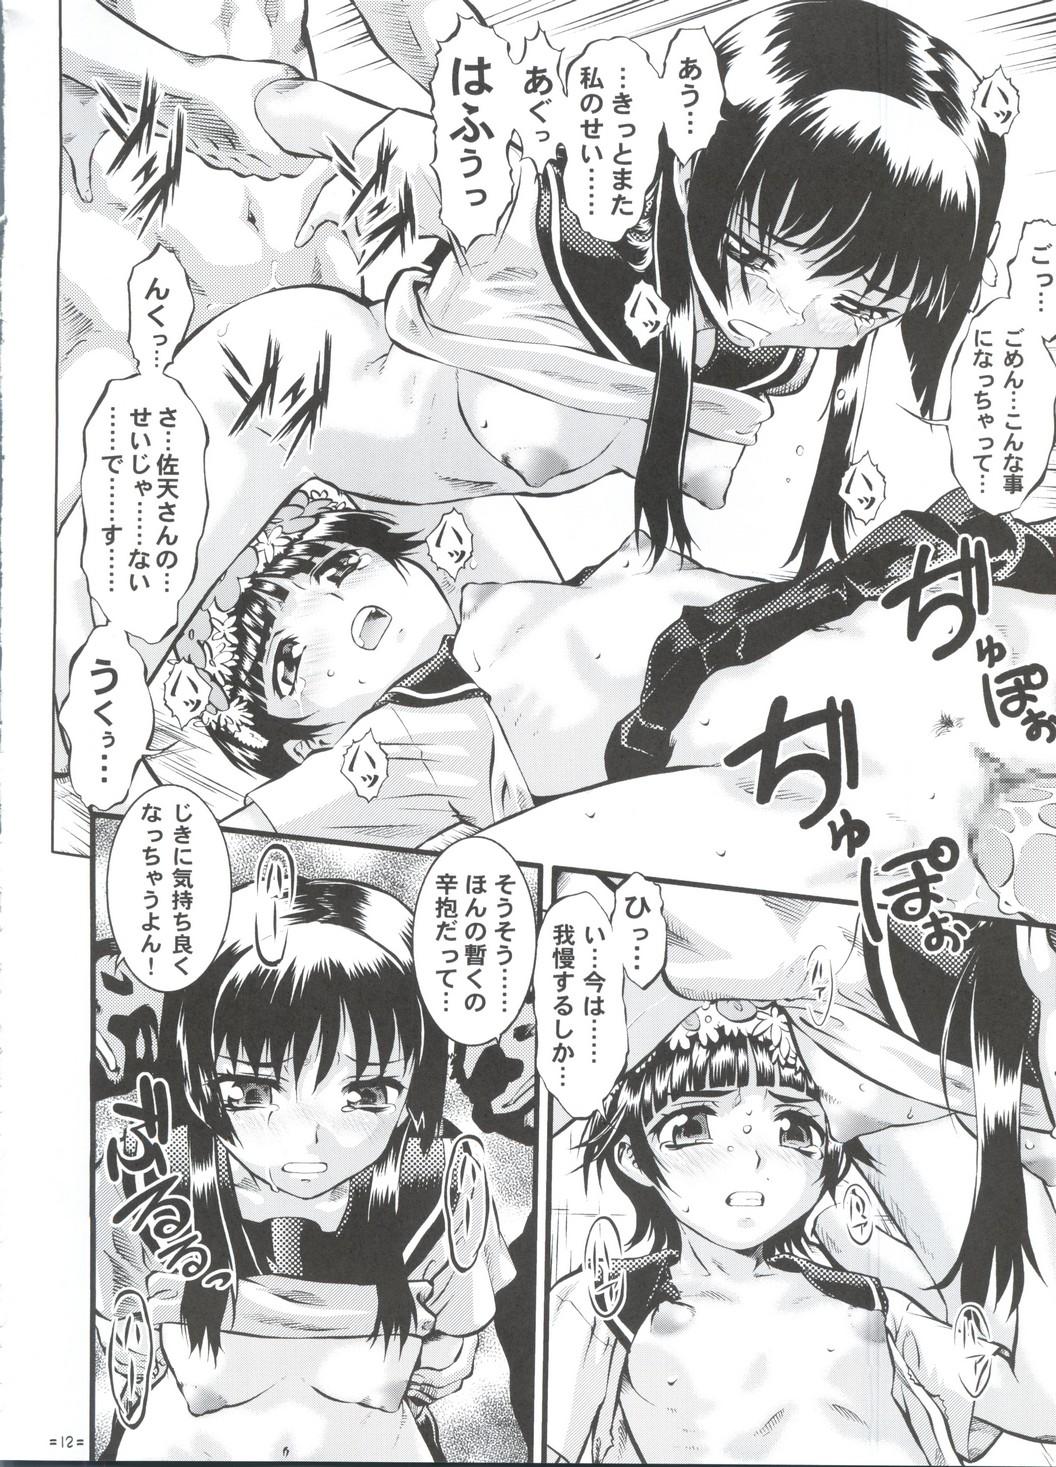 Tites W Poron TO-R - Toaru kagaku no railgun Koihime musou Chaturbate - Page 11